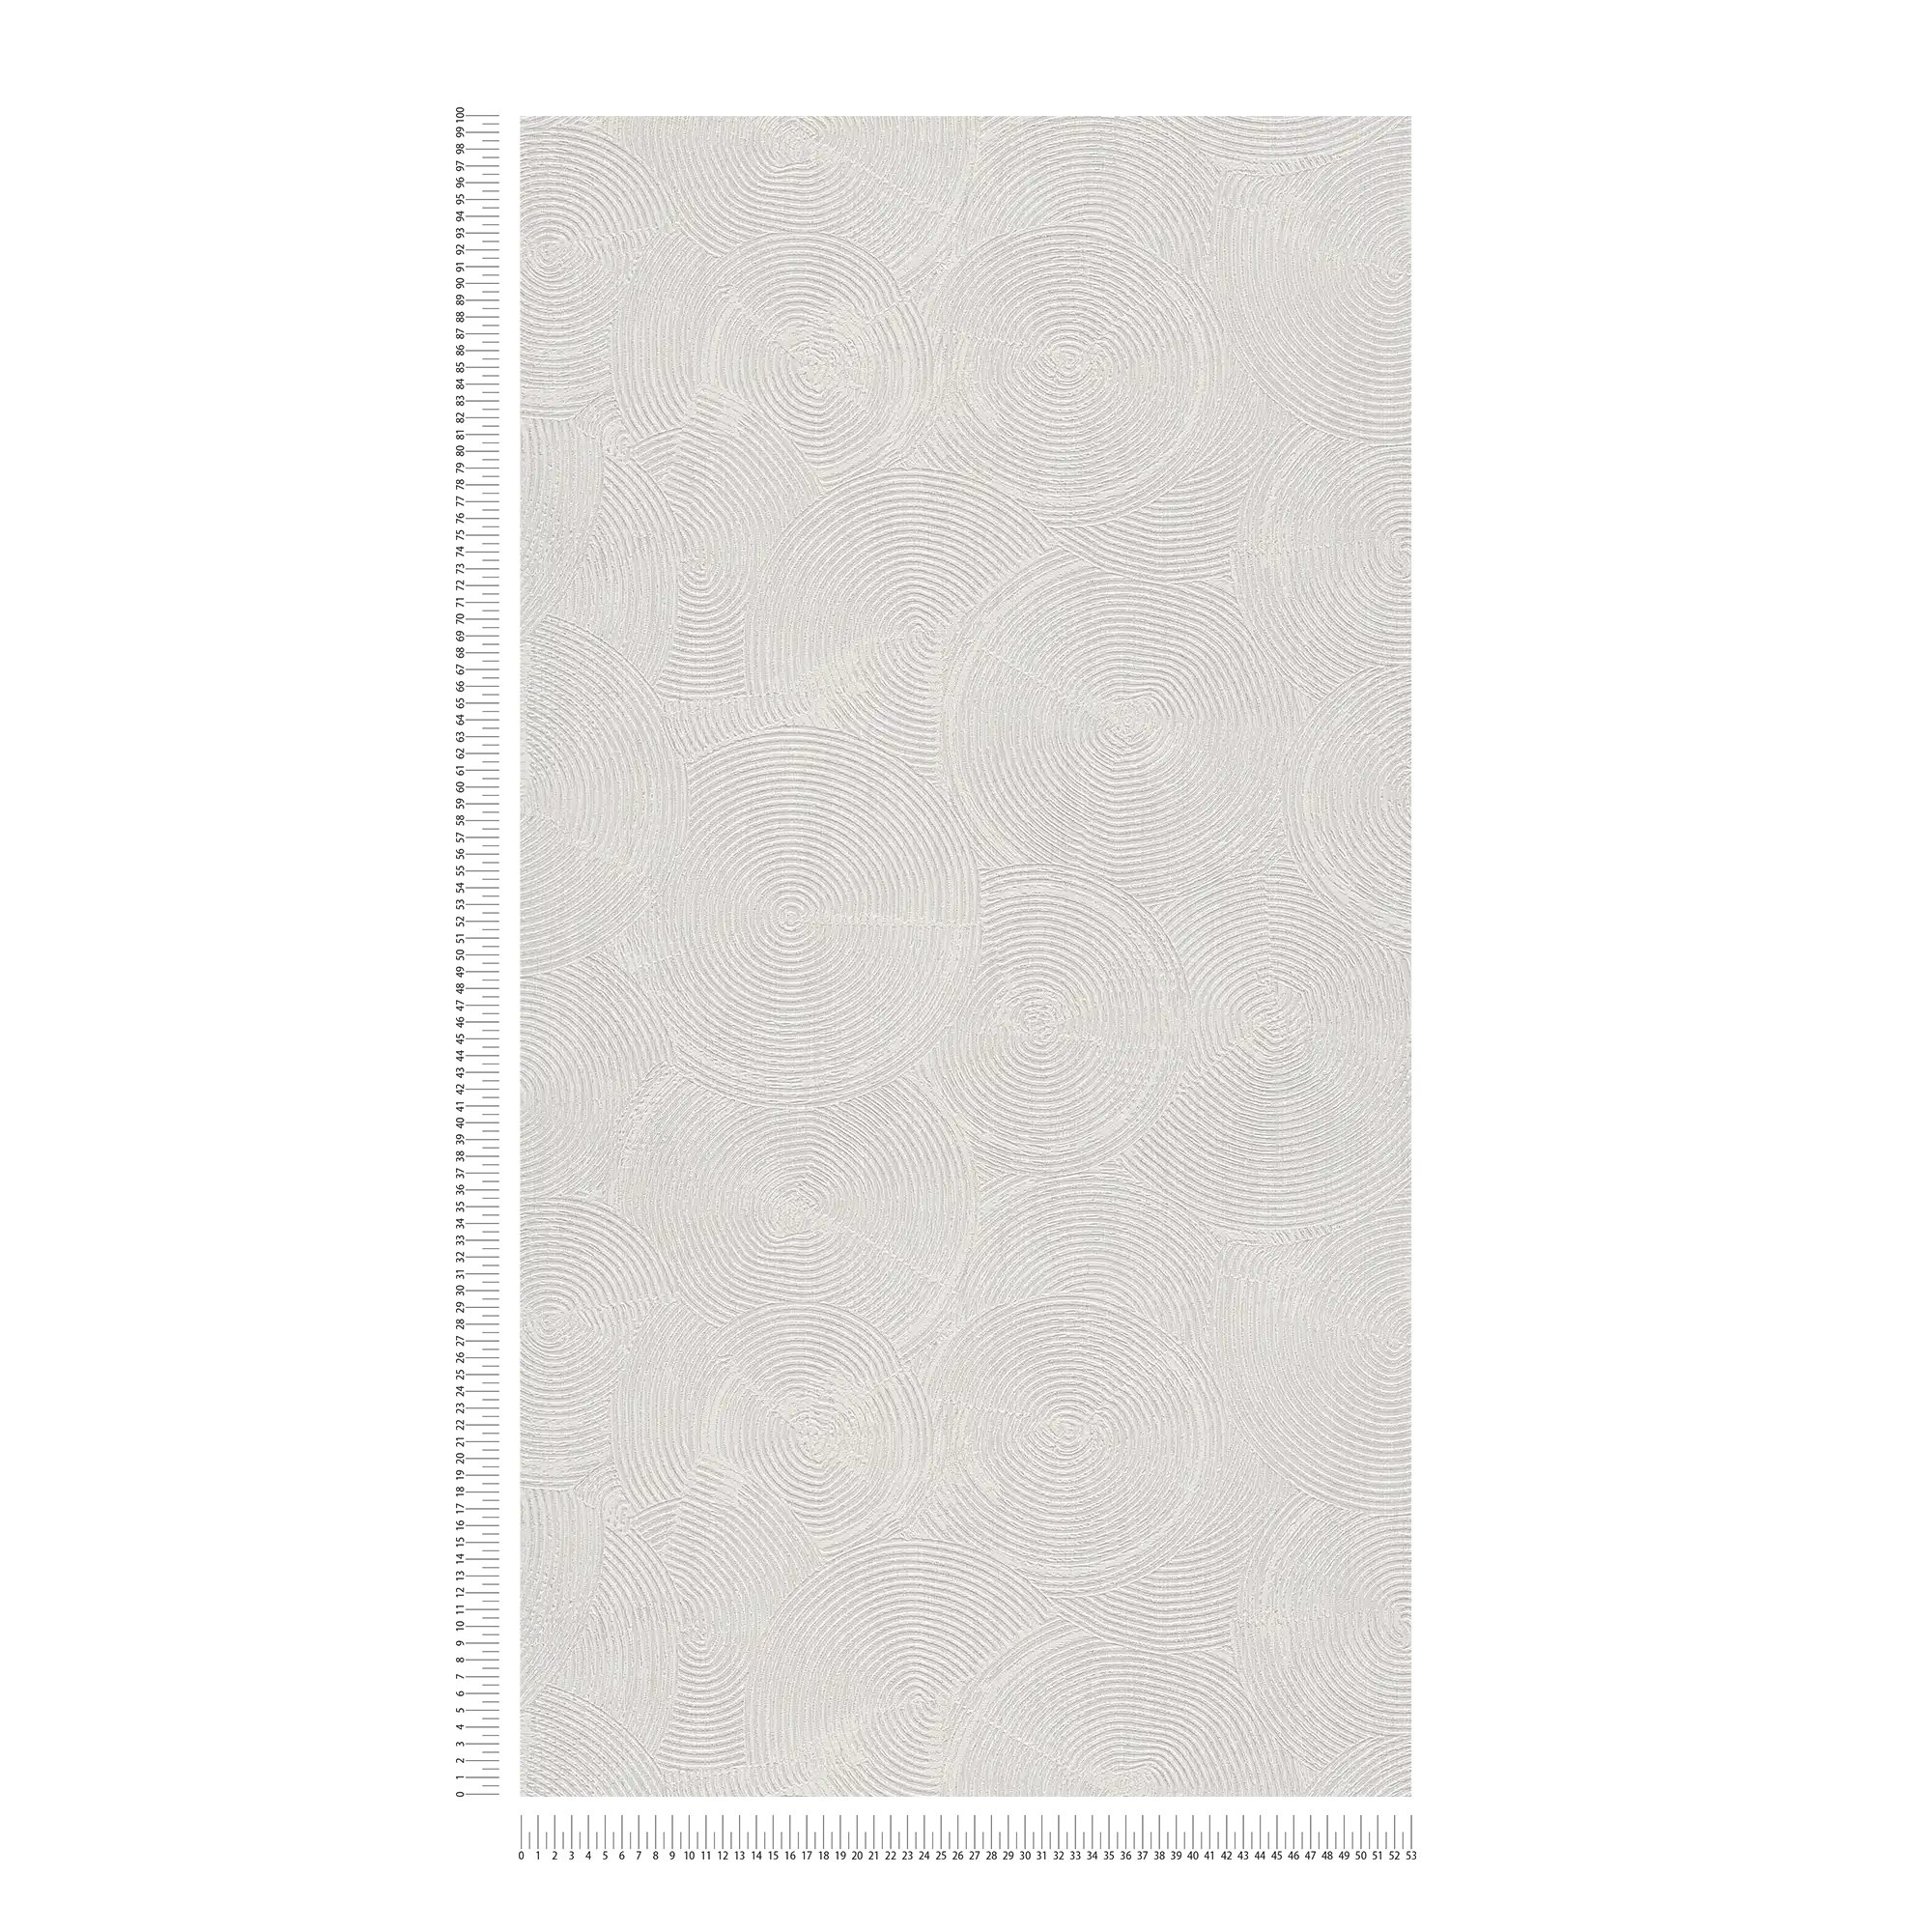             Papier peint à l'aspect plâtreux moderne & accents métalliques - gris, métallique, blanc
        